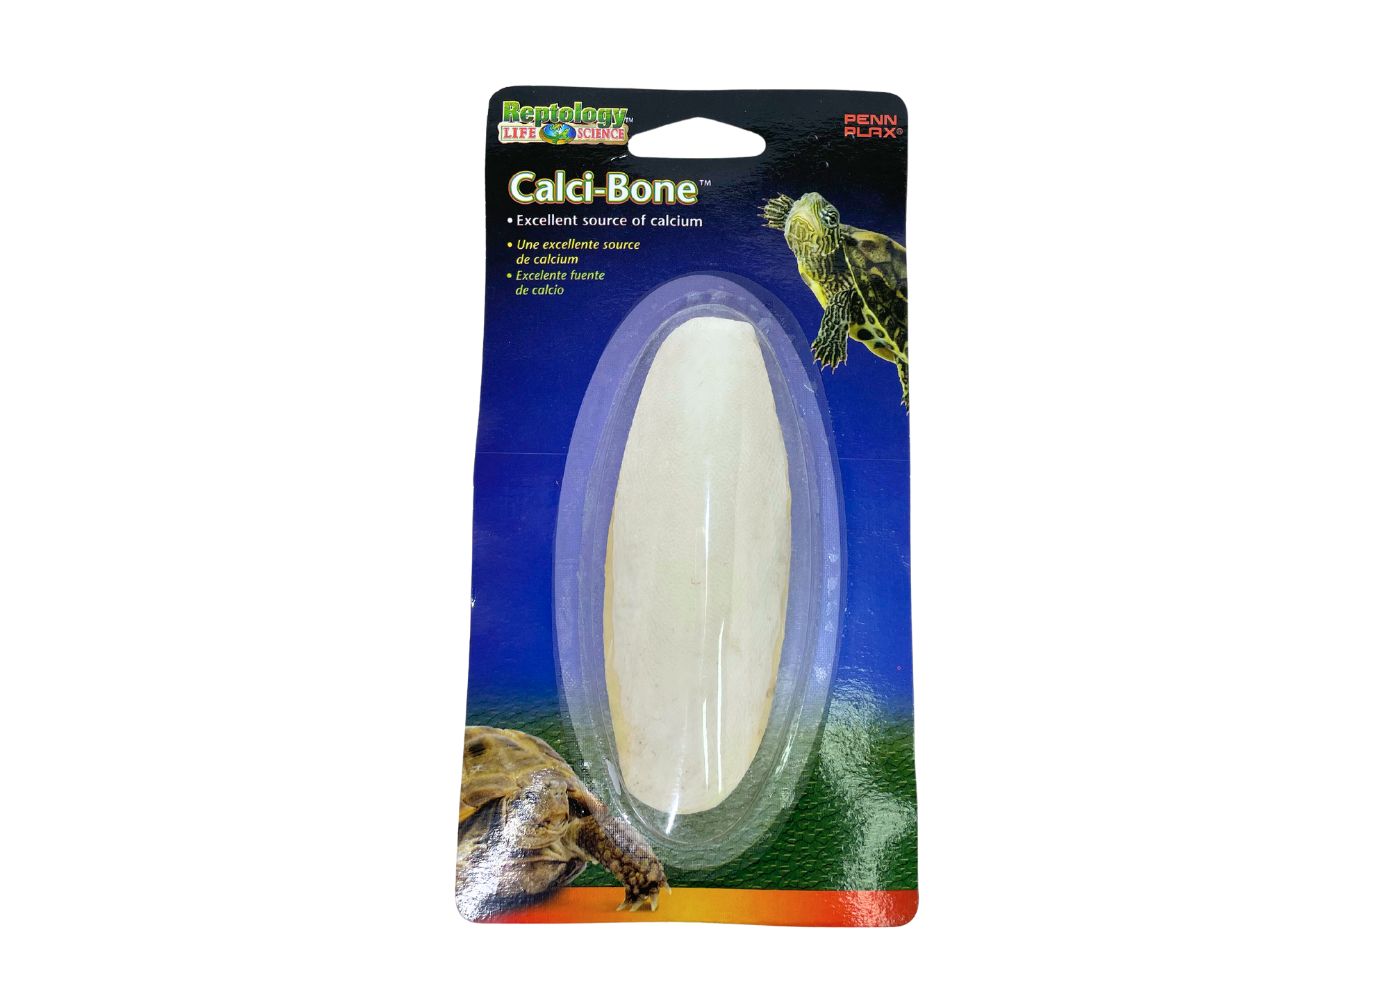 Turtle Supplements Calci-Bone, excellent source of calcium for turtle - Coburg Aquarium - Aquarium Supplies shop online